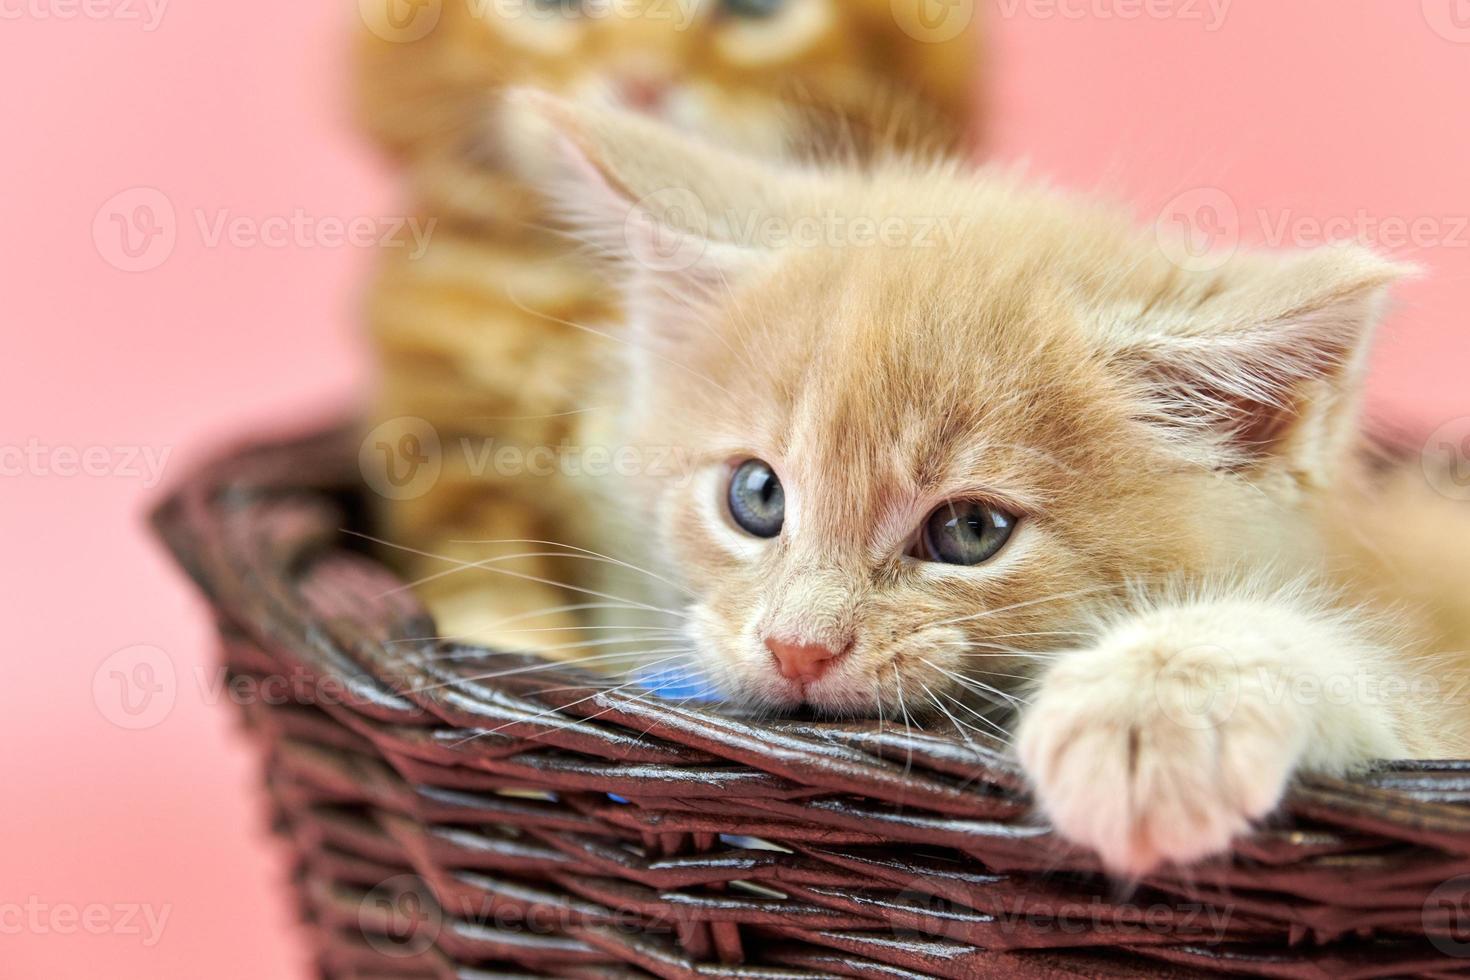 gatinhos maine coon na cesta, vermelho e creme foto